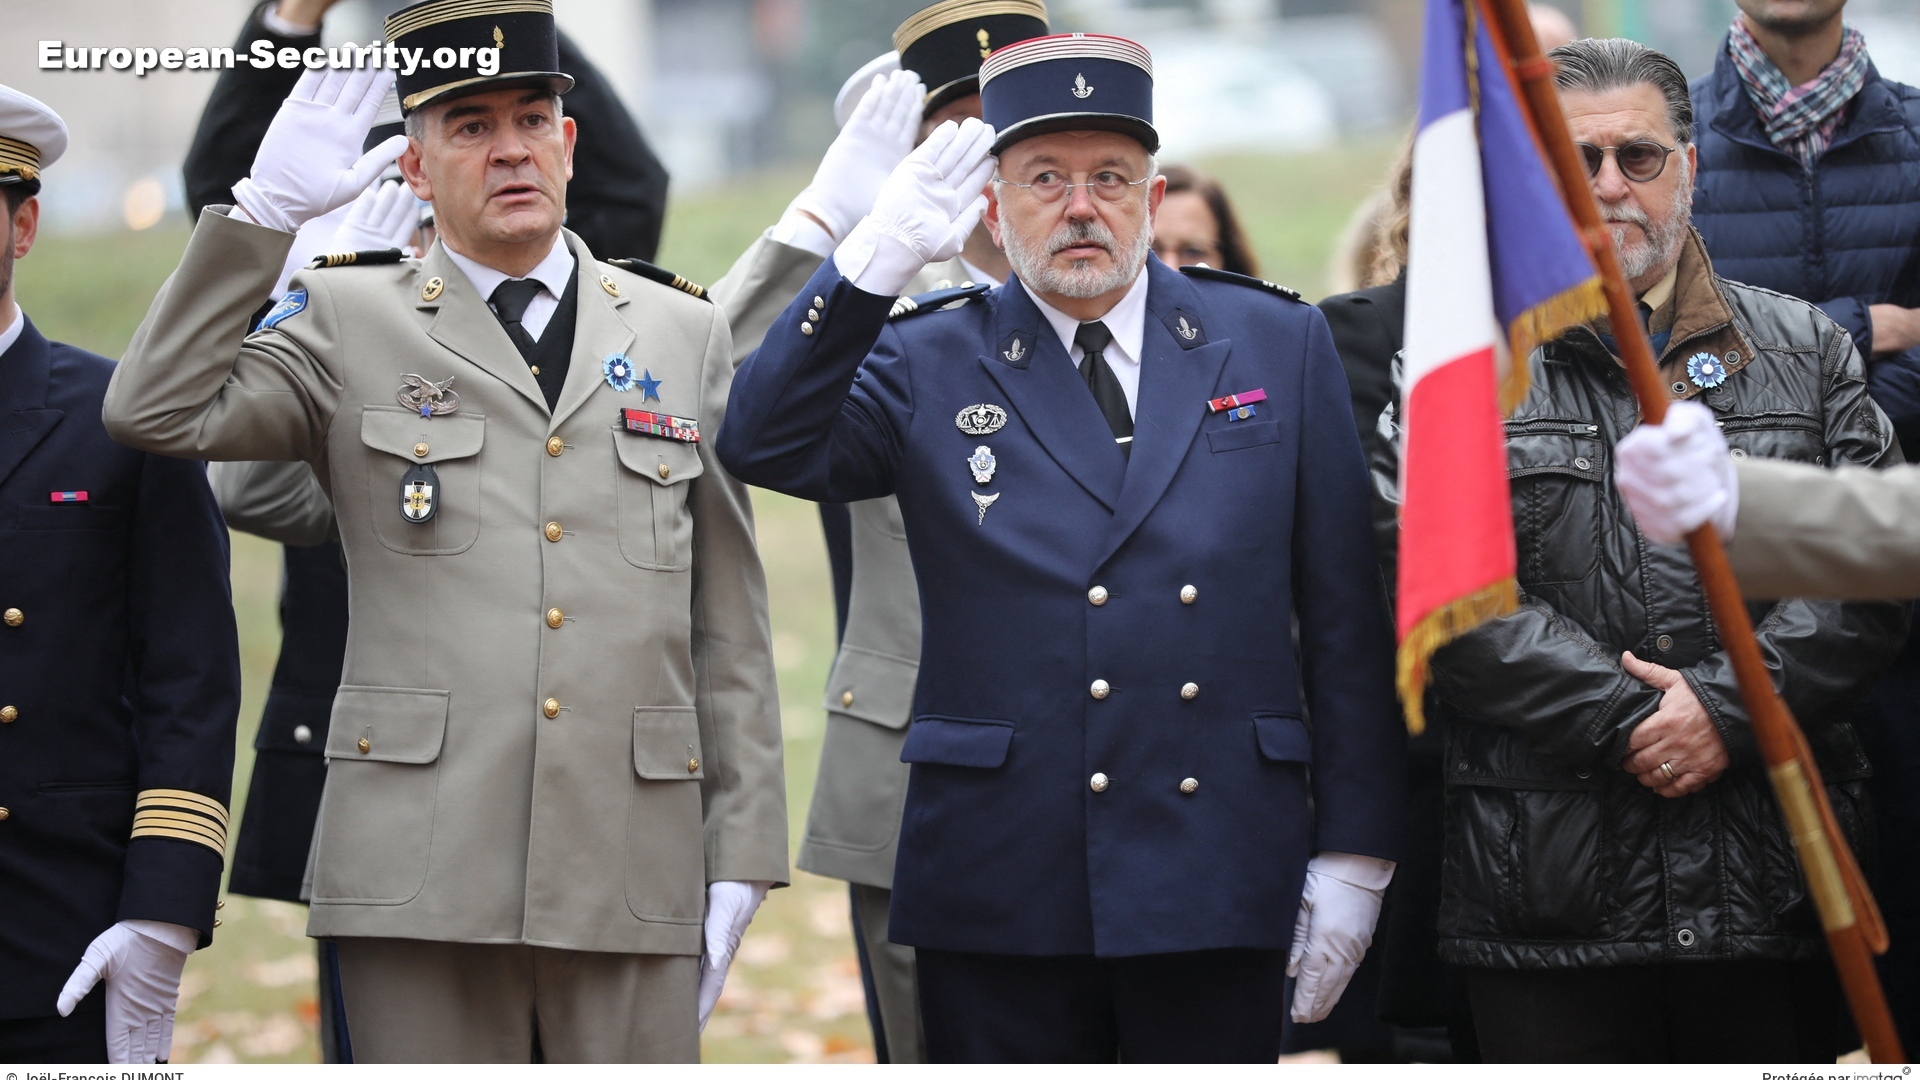 Les colonels Thierry Gauci (LH), Yvan Chazalvieil (Attaché douanier) et Raoul Emme (UFE) -- Photo © Joël-François Dumont. -